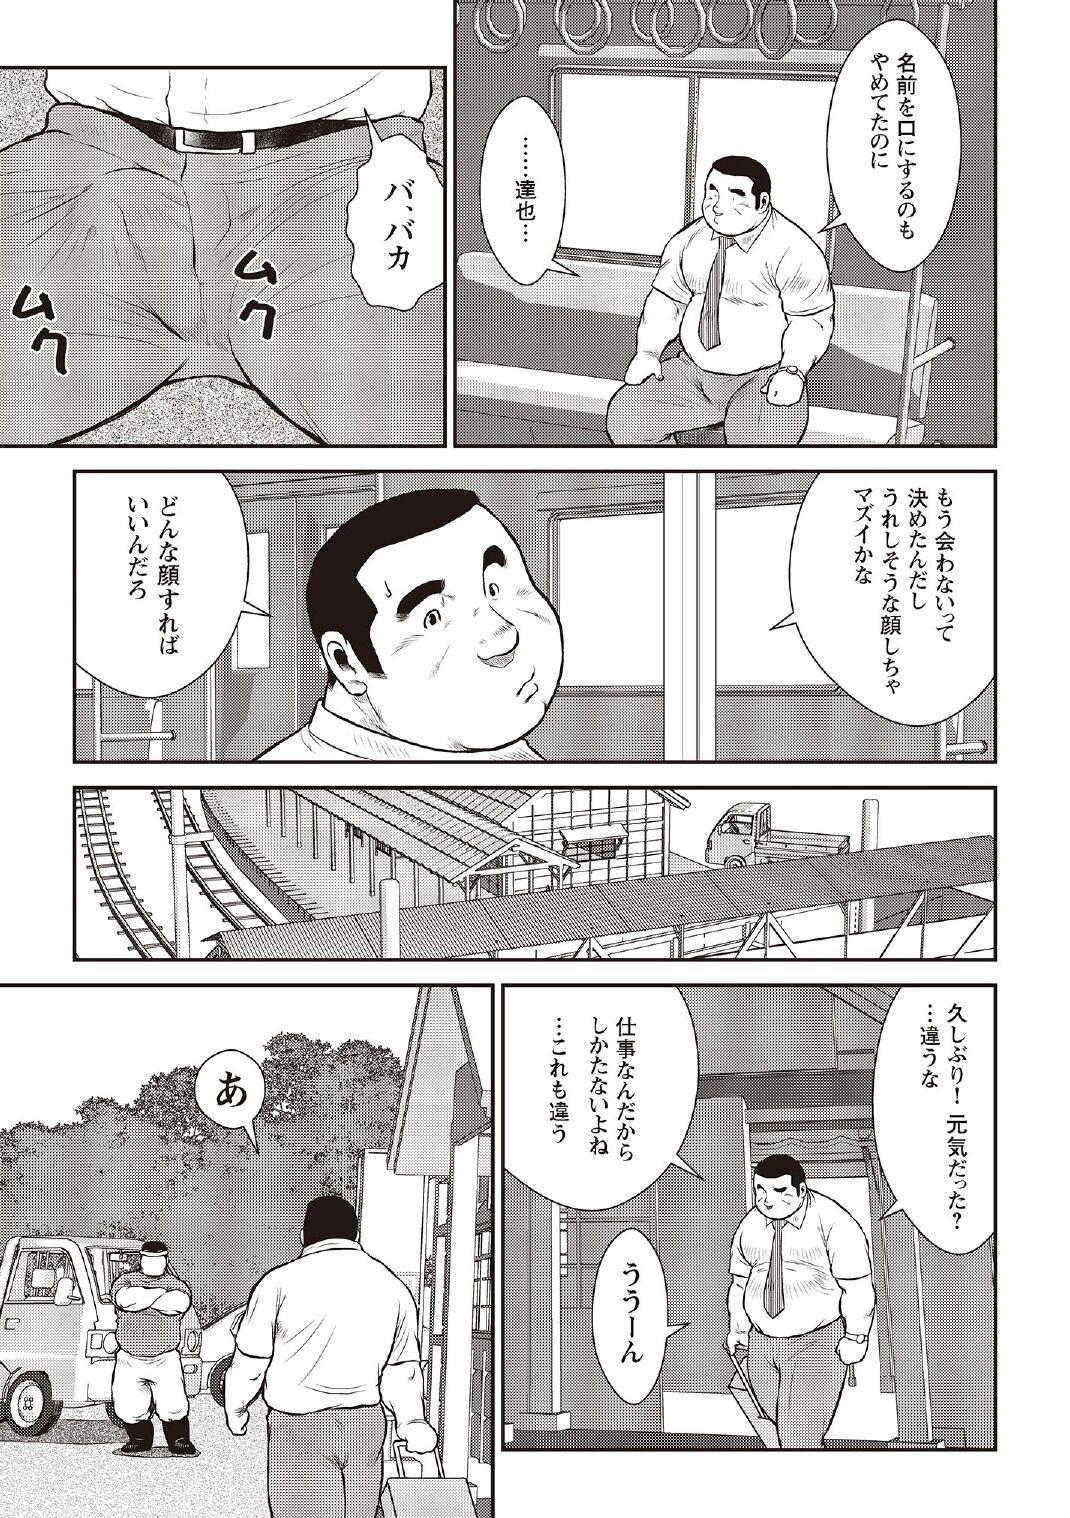 [Ebisubashi Seizou] Ebisubashi Seizou Tanpen Manga Shuu 2 Fuuun! Danshi Ryou [Bunsatsuban] PART 3 Bousou Hantou Taifuu Zensen Ch. 3 ~ Ch. 5 [Digital] 68